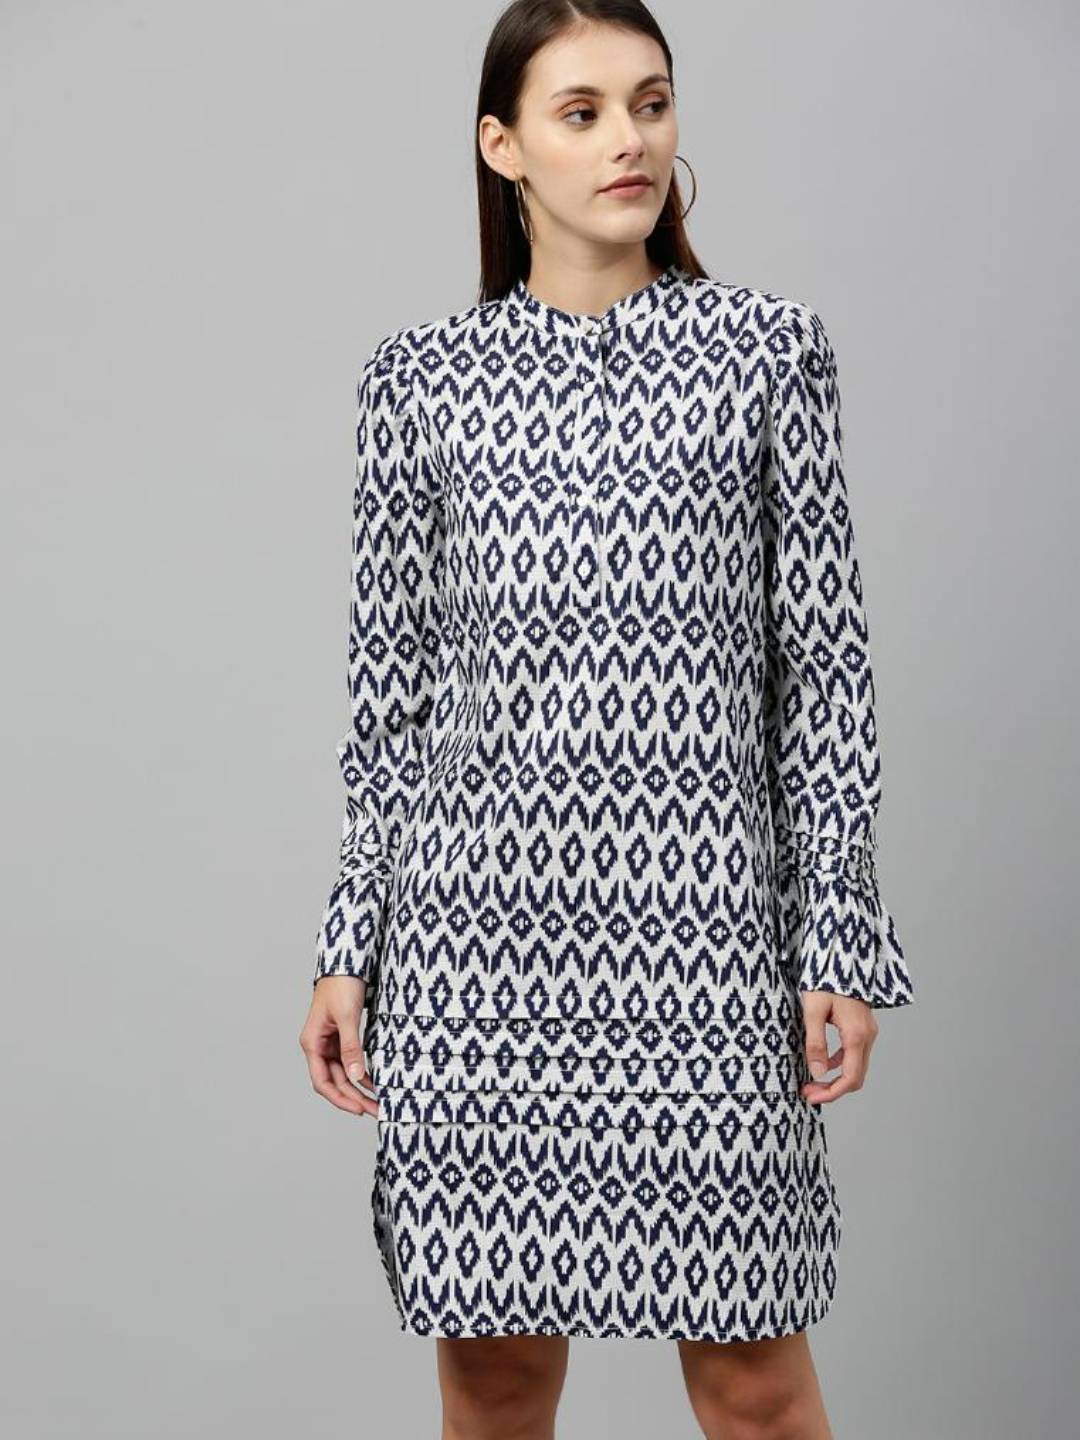 Blue & White printed Rayon dress